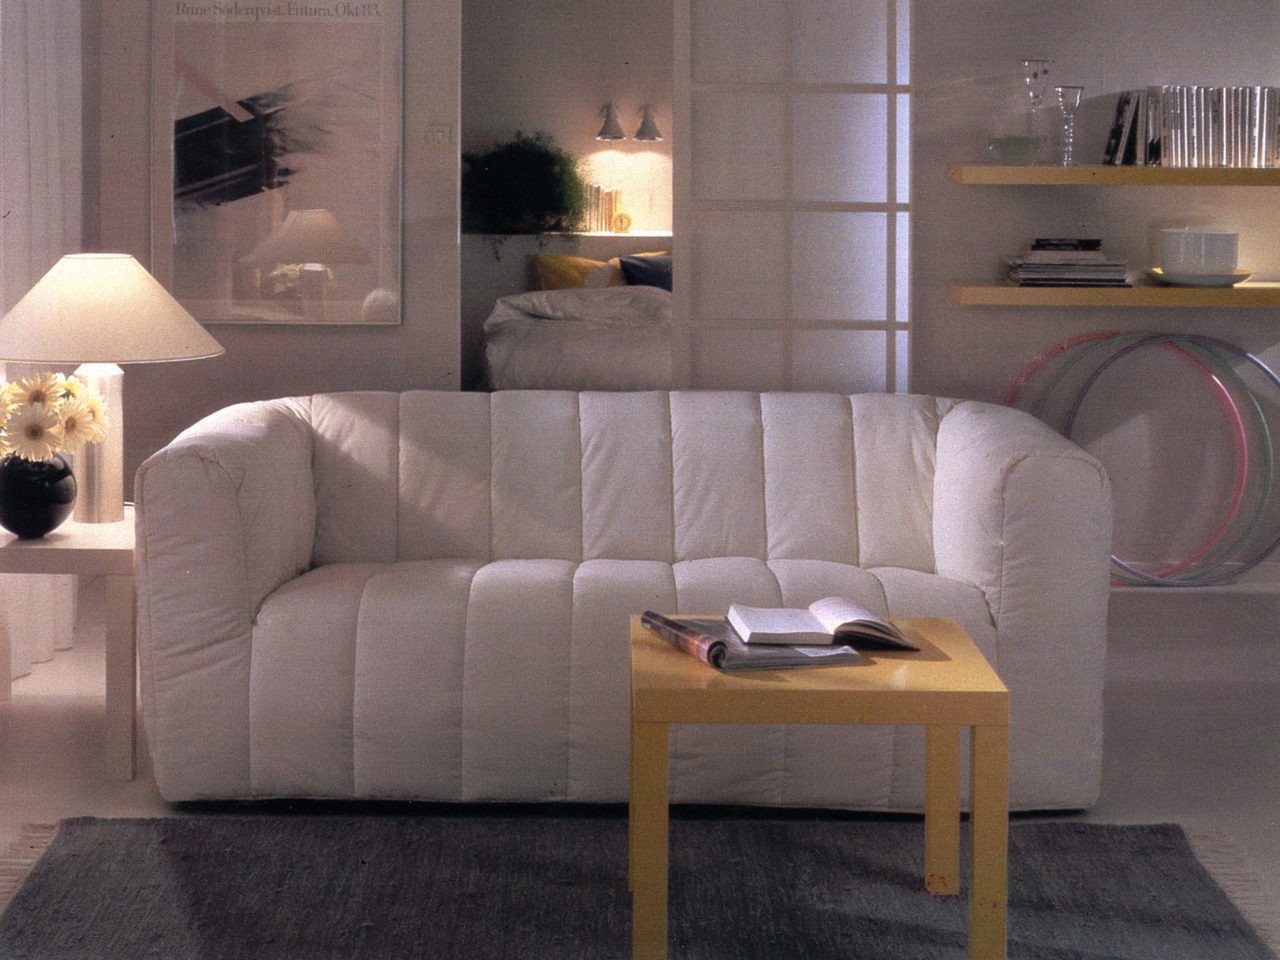 Ett rum i vitt med en bullig, vit soffa av modell KLIPPAN i mitten. Ett soffbord och vägghyllor i ljust trä, modell LACK.